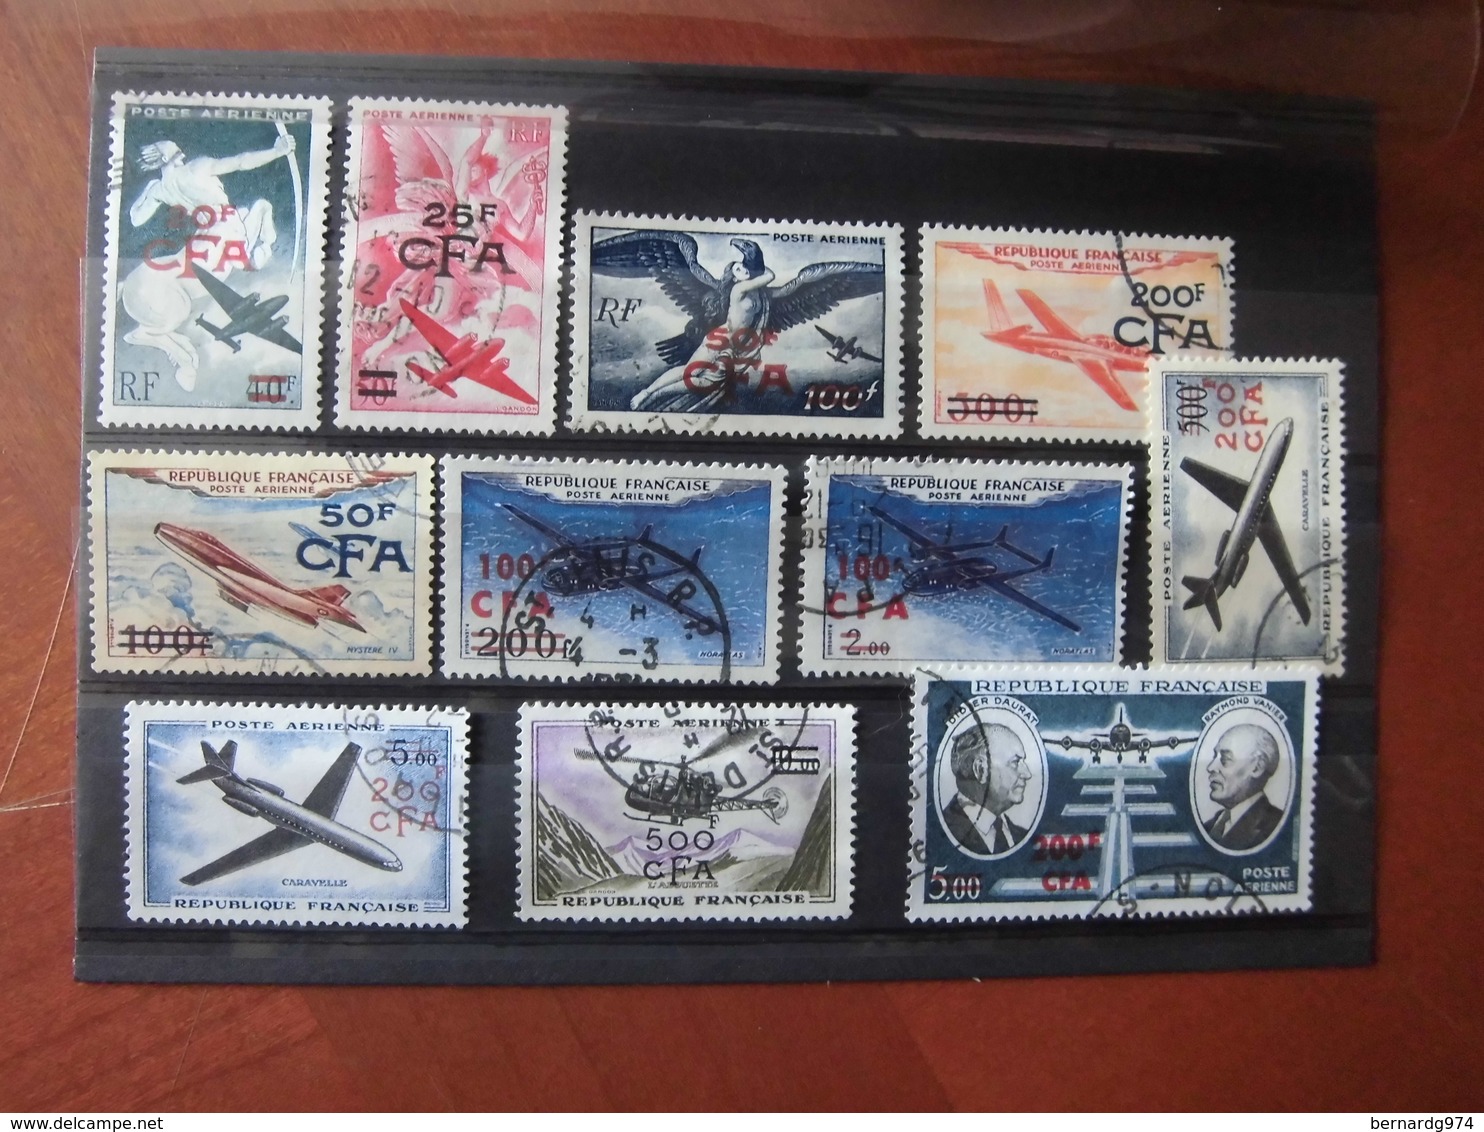 Réunion CFA : collection quasi complète oblitérée. 199 timbres différents. Côte Y et T 2004 : 475 euros.